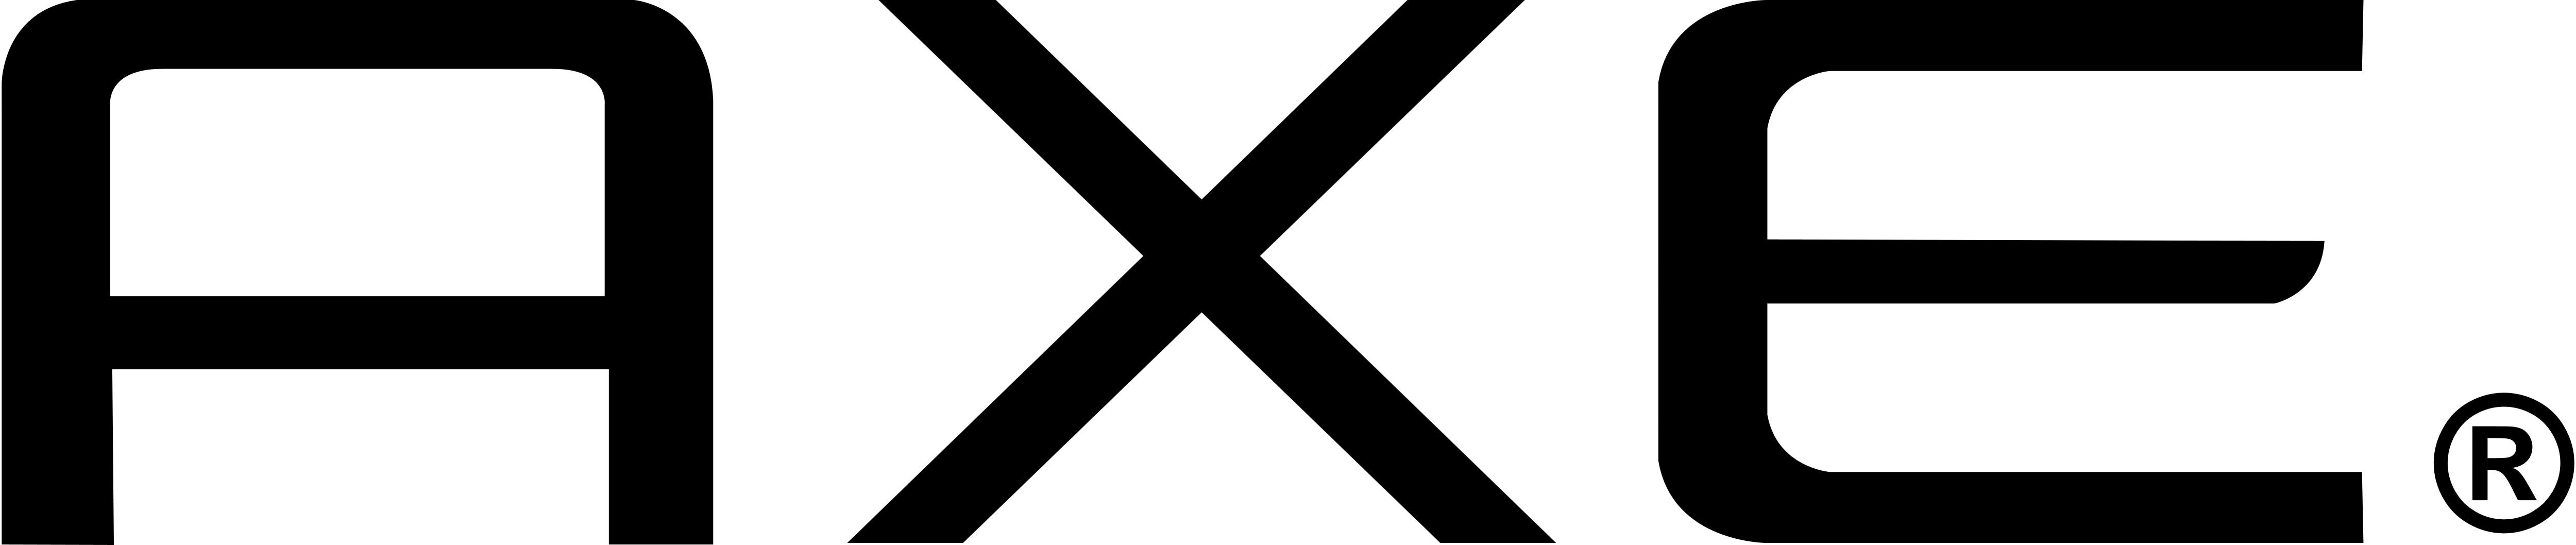 Axe Black vector logo .